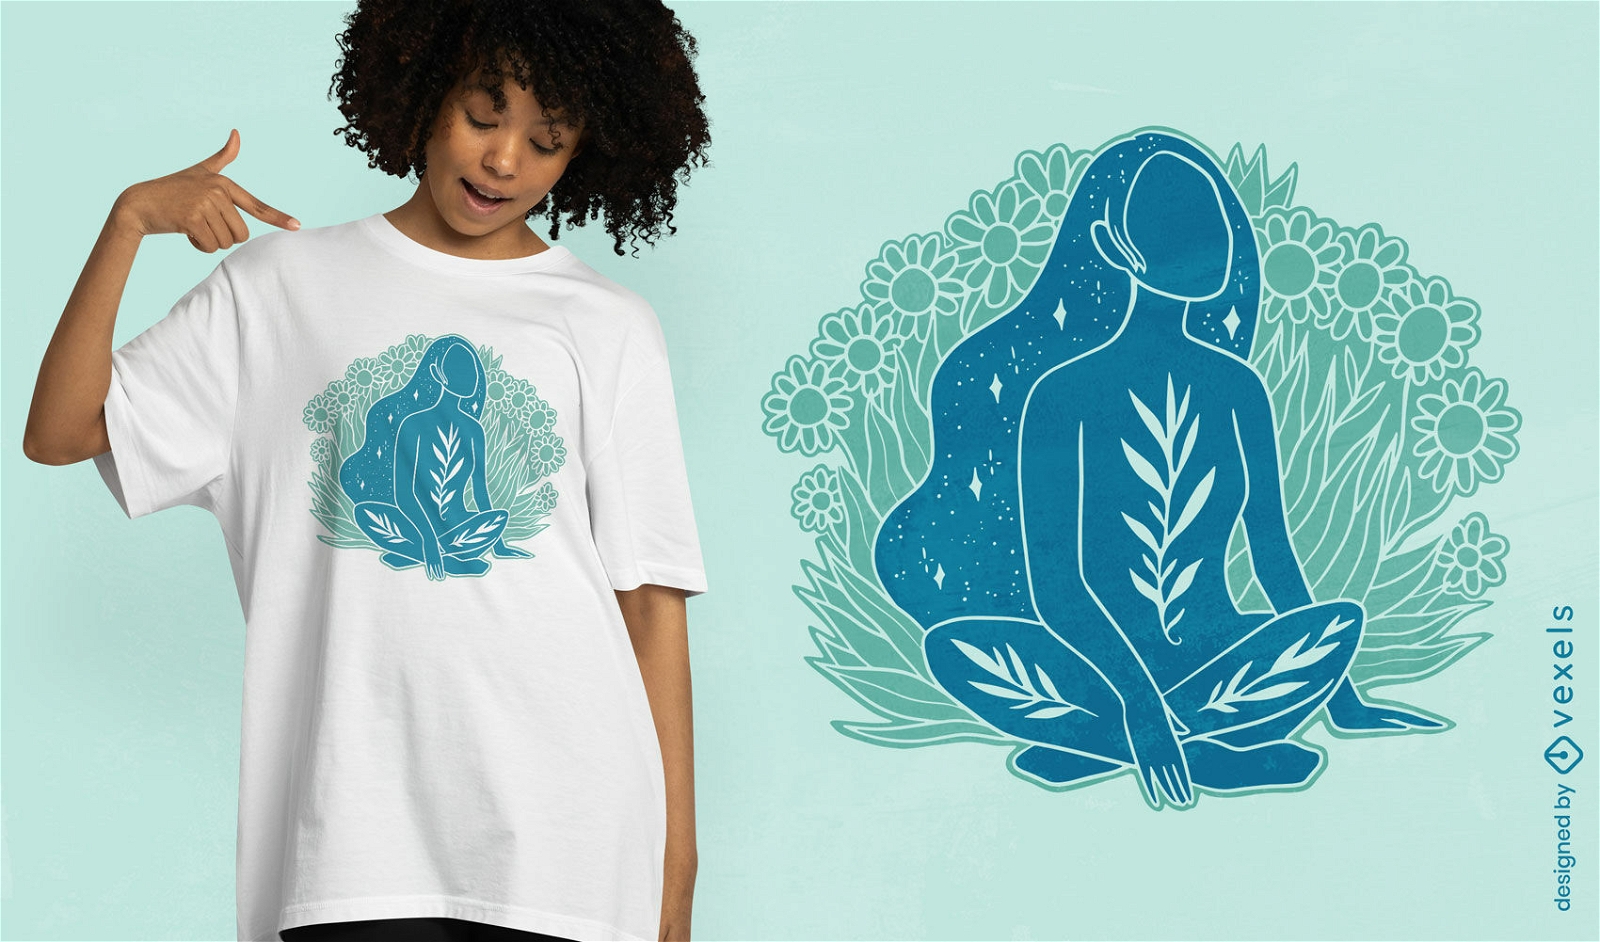 Mystisches Frauennatur-T-Shirt Design